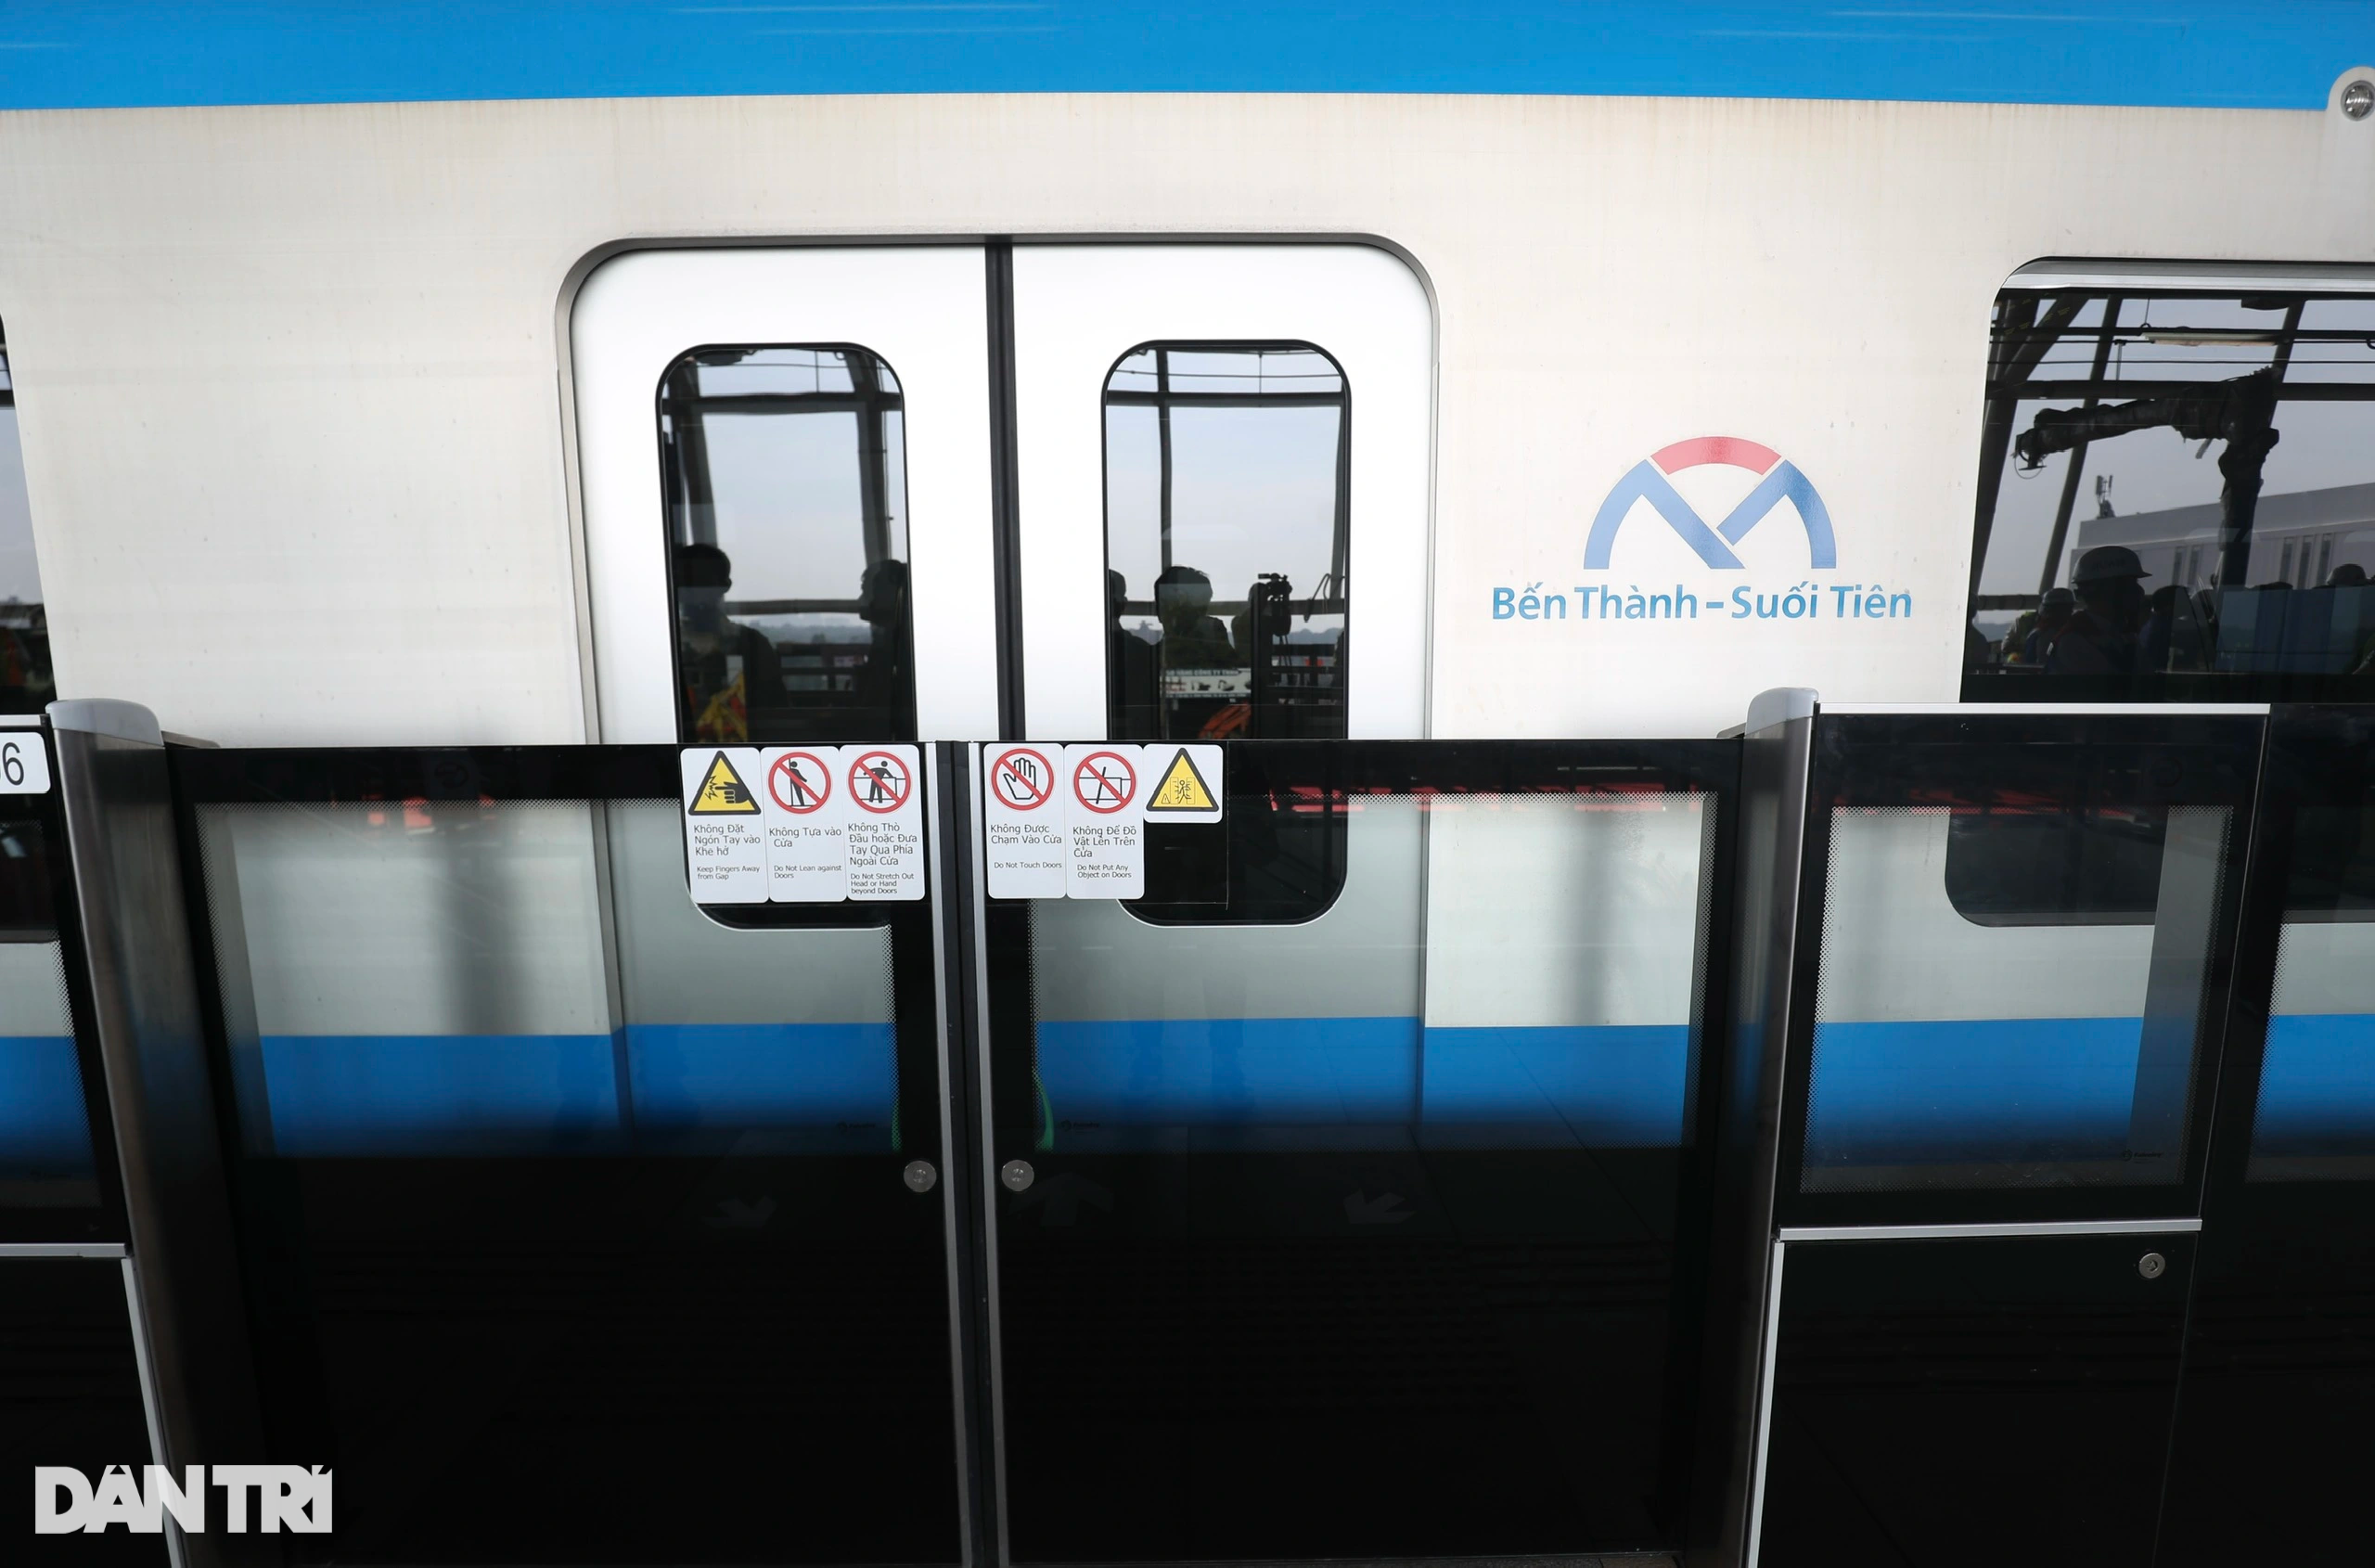 Người dân TPHCM hào hứng thử nghiệm tàu metro số 1 Bến Thành - Suối Tiên - 4